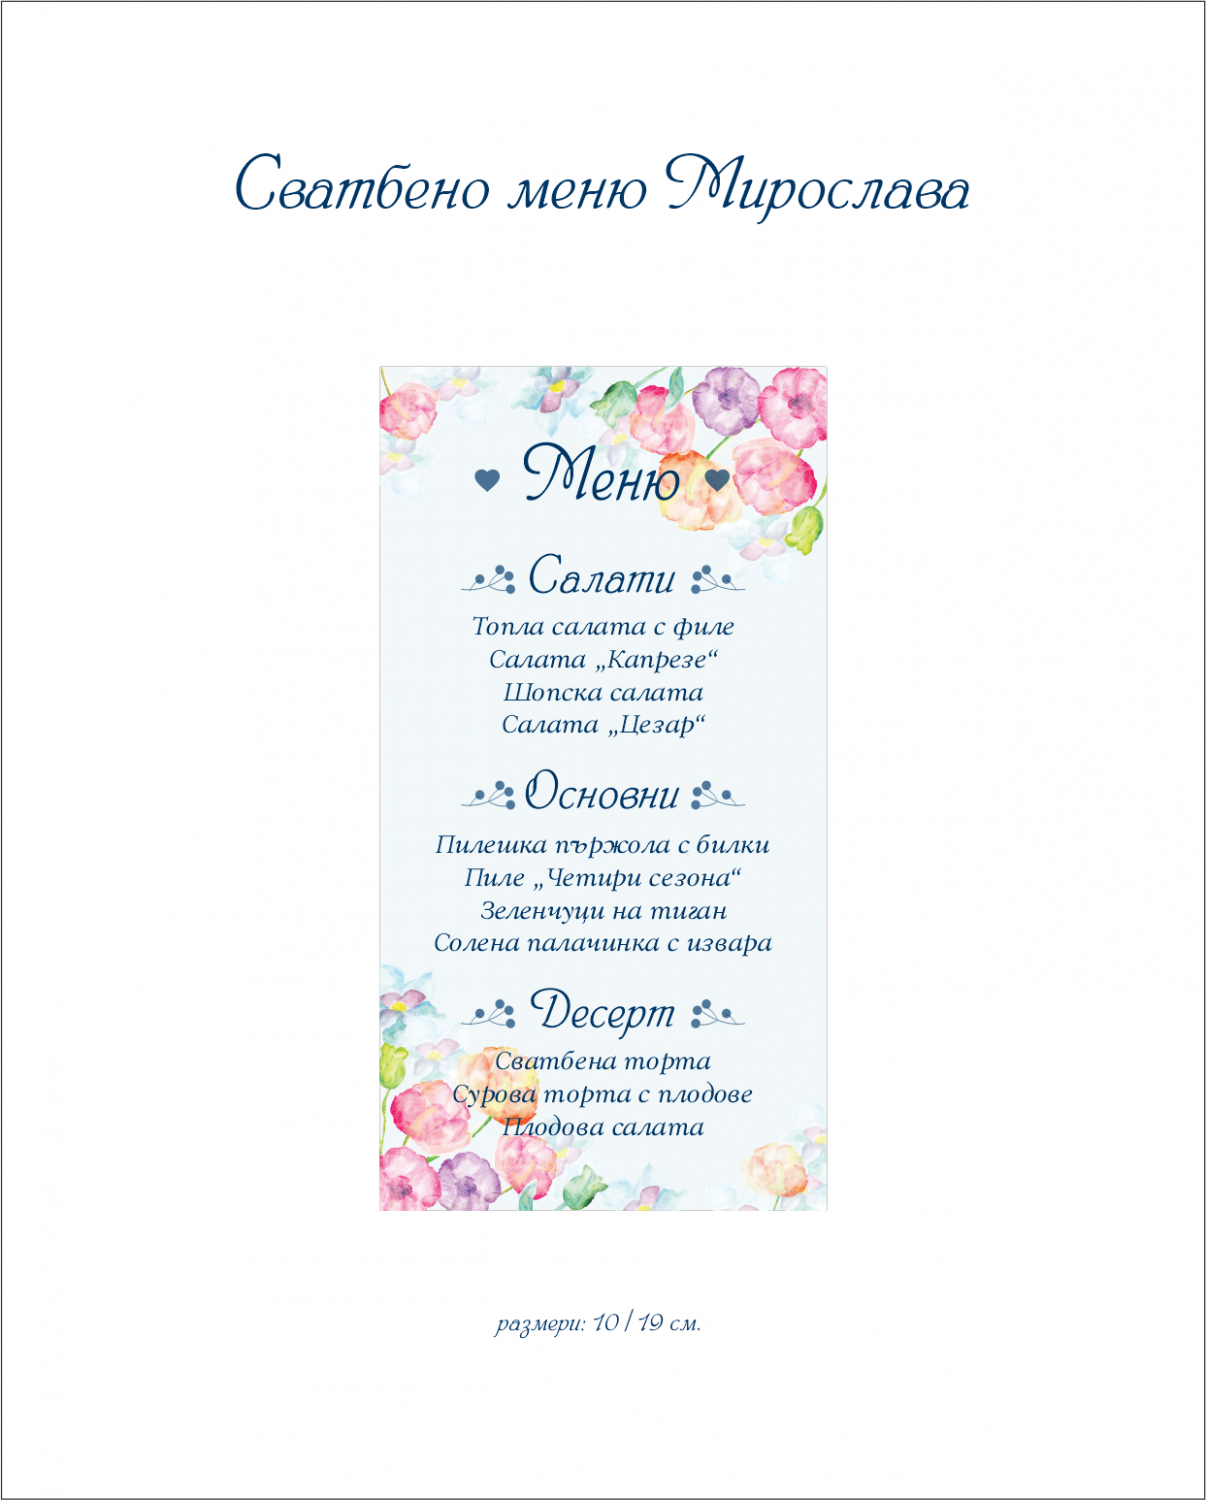 Сватбено меню МИРОСЛАВА